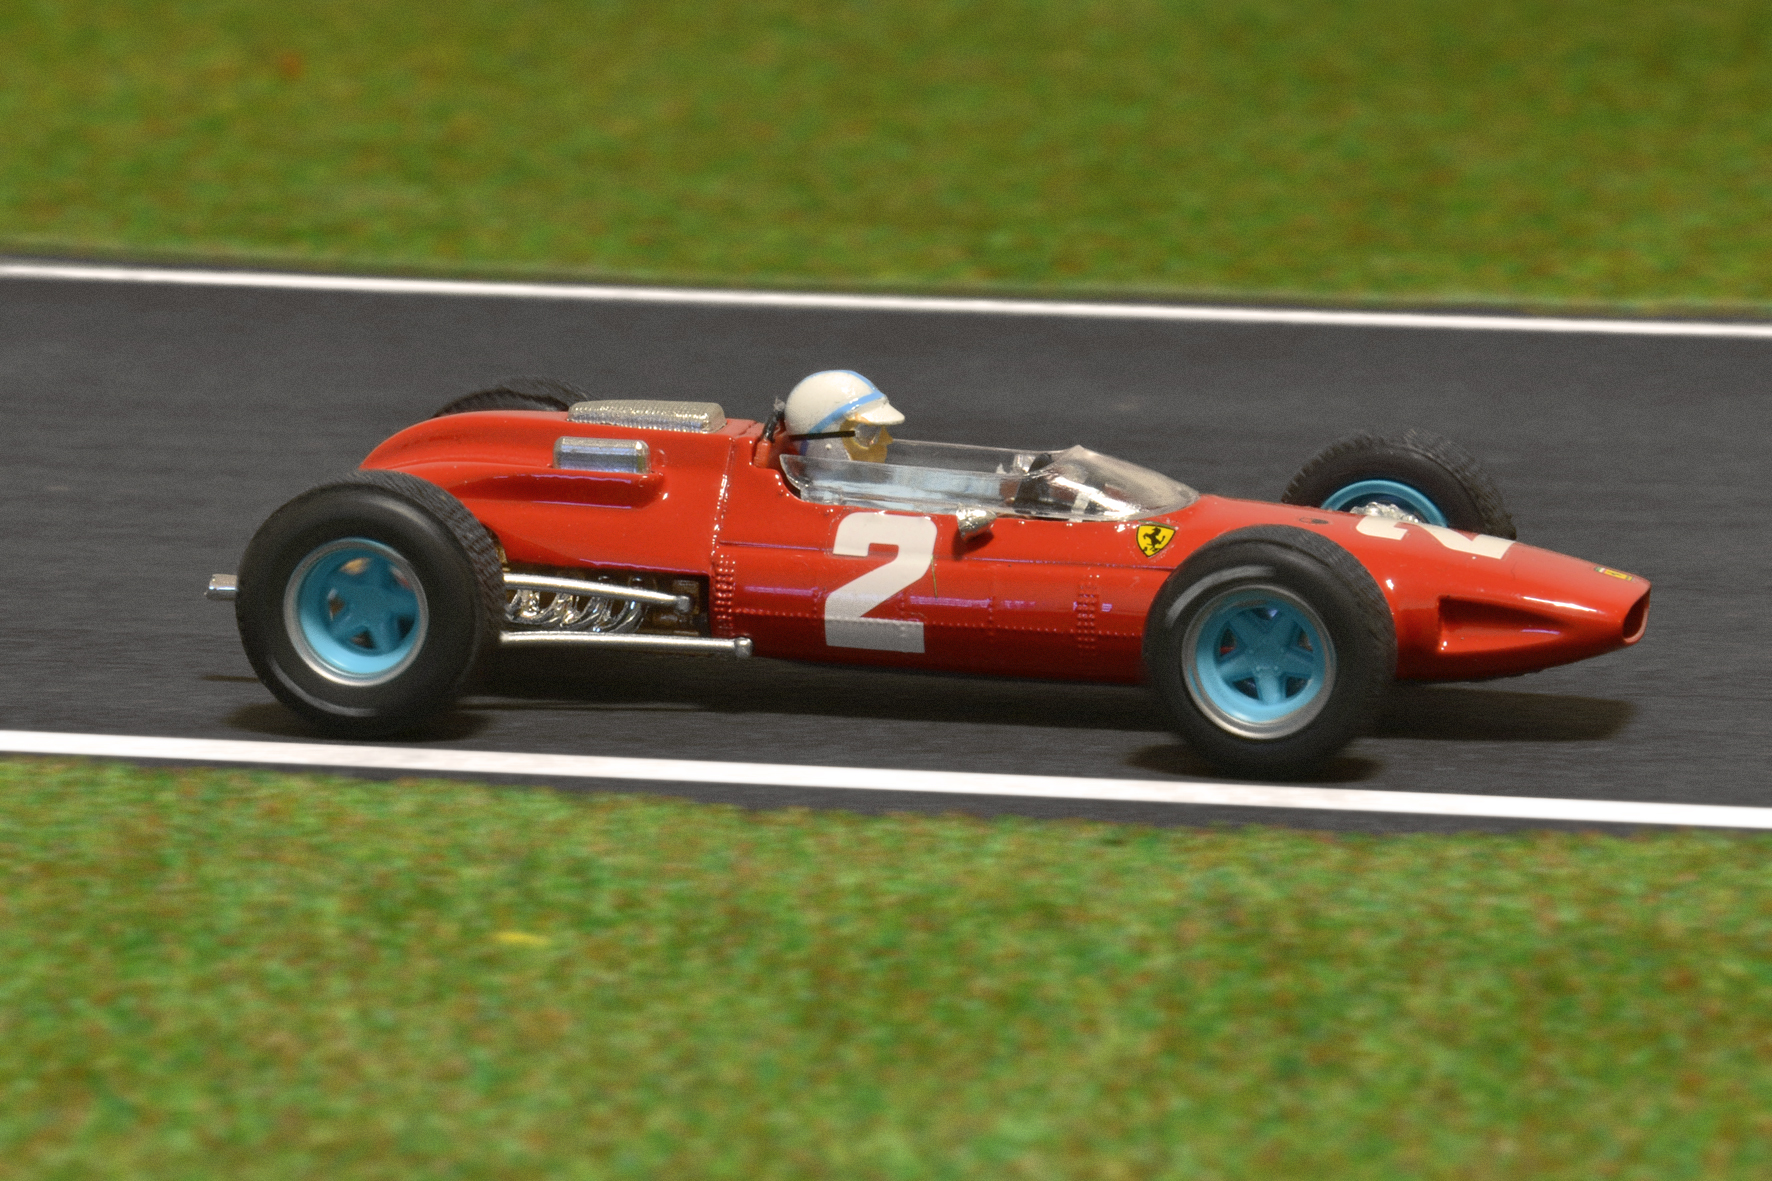 Év:1964<br />Modell: 158 <br />Pilóta: John Surtees<br />Gyártó: Brumm